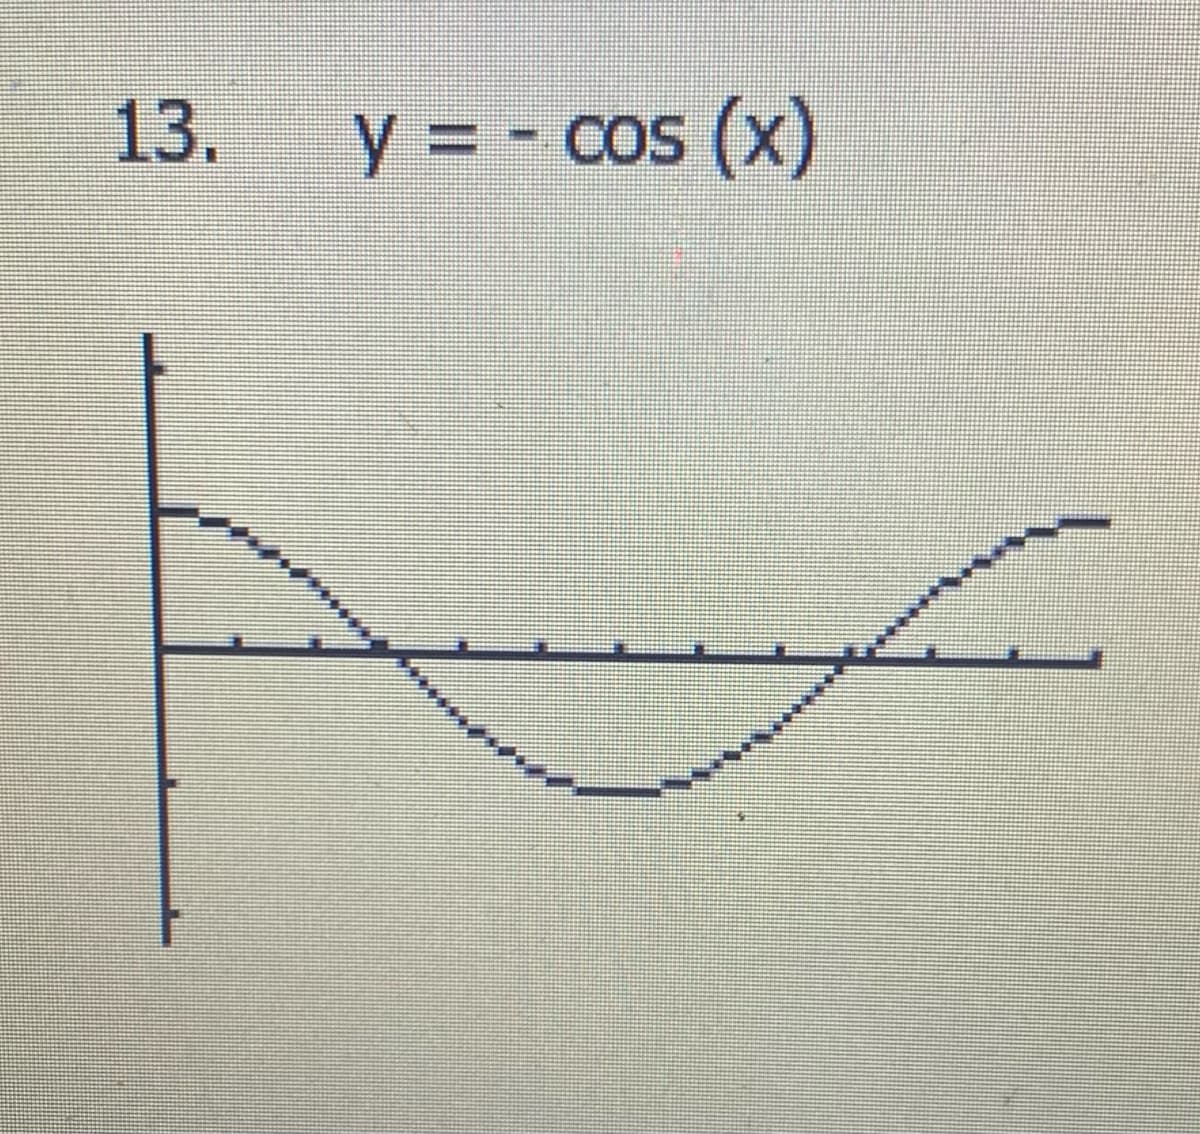 13.
y = - cos (x)
